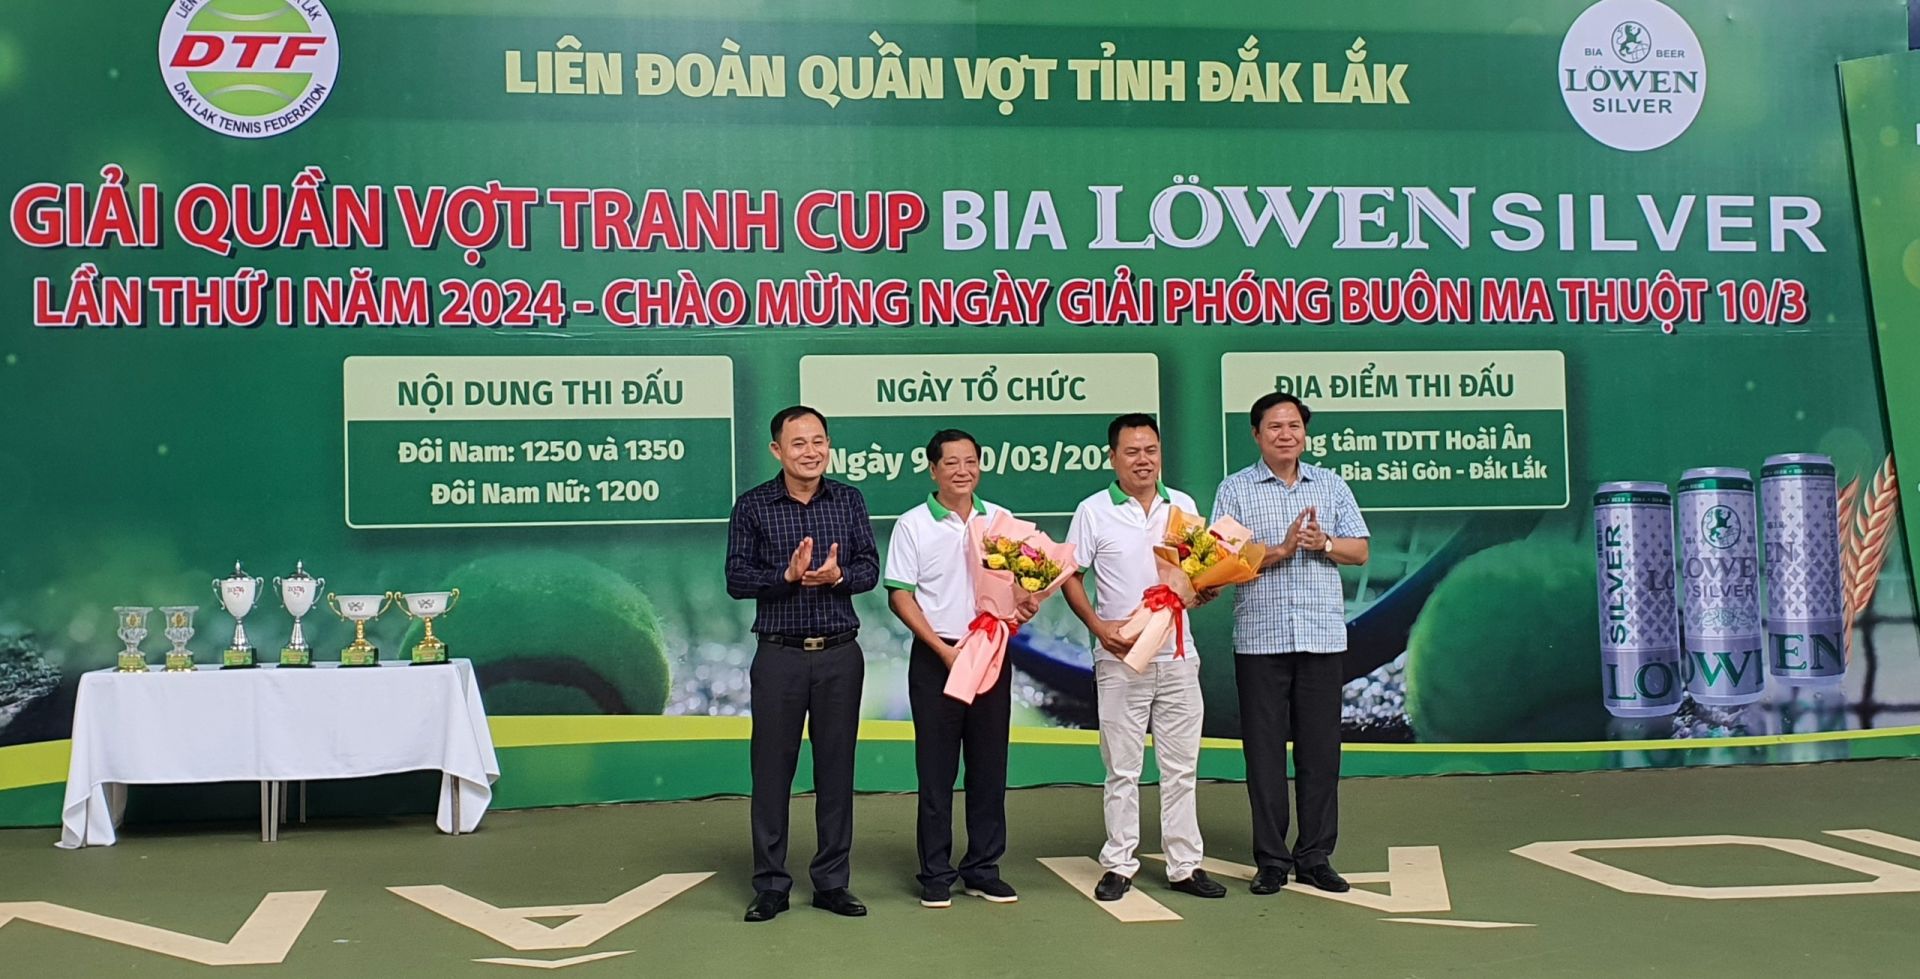 Lãnh đạo Sở Văn hóa - thể thao và Du lịch tỉnh Đắk Lắk cùng lãnh đạo UBND Tp Buôn Ma Thuột tặng hoa cho đại diện Ban tổ chức giải.